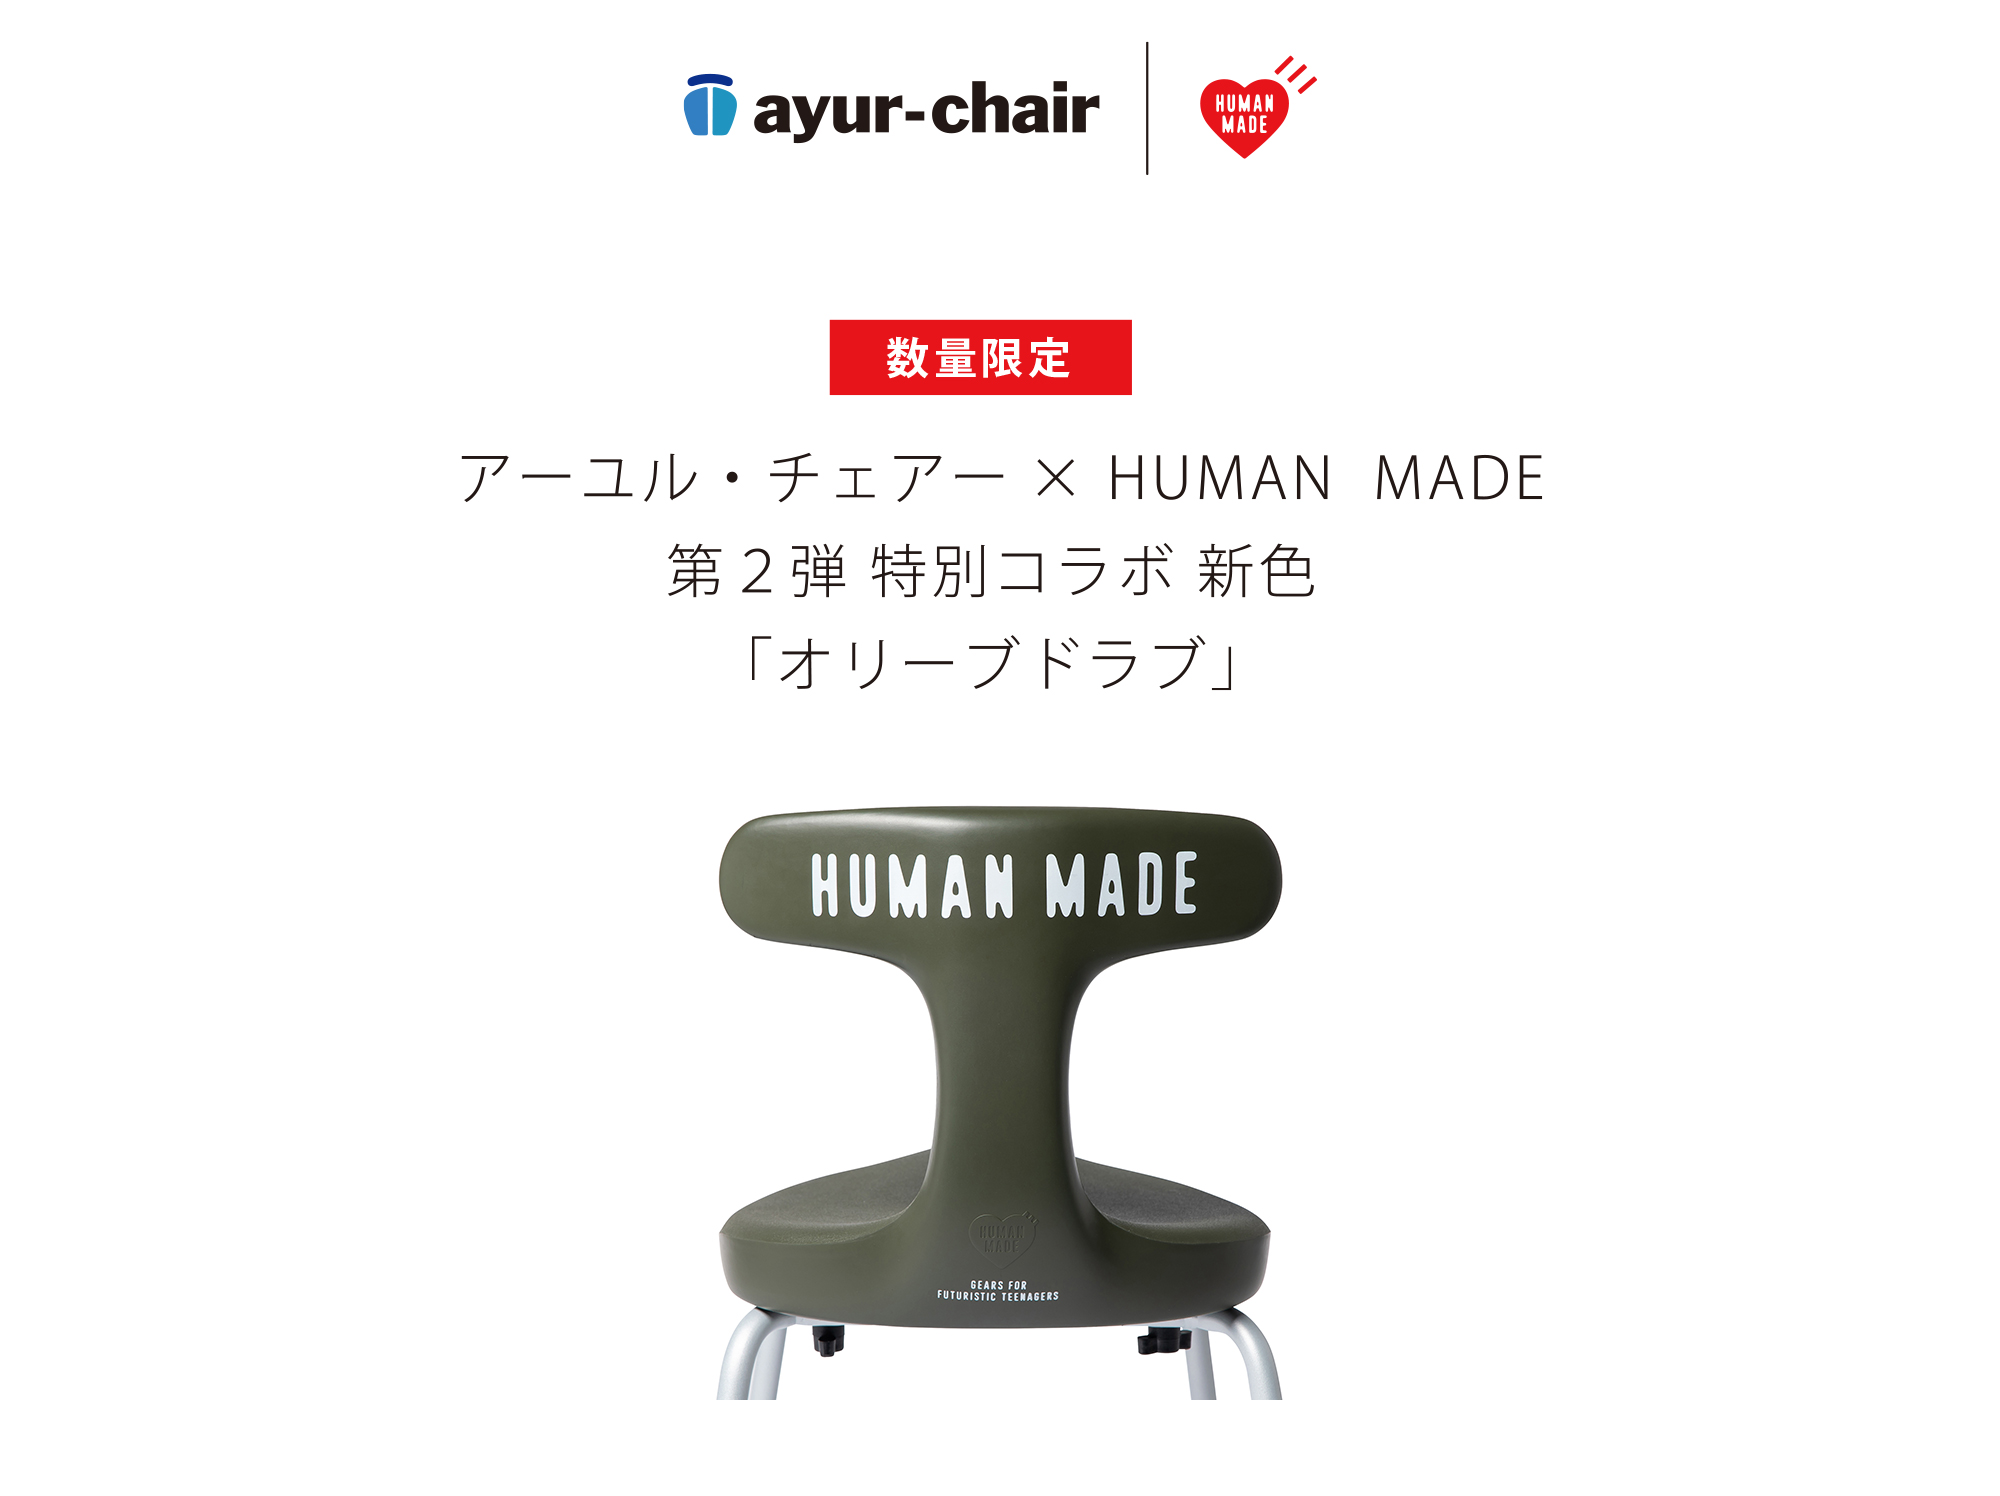 【新品未使用】アーユルチェア x HUMAN MADE コラボレーション